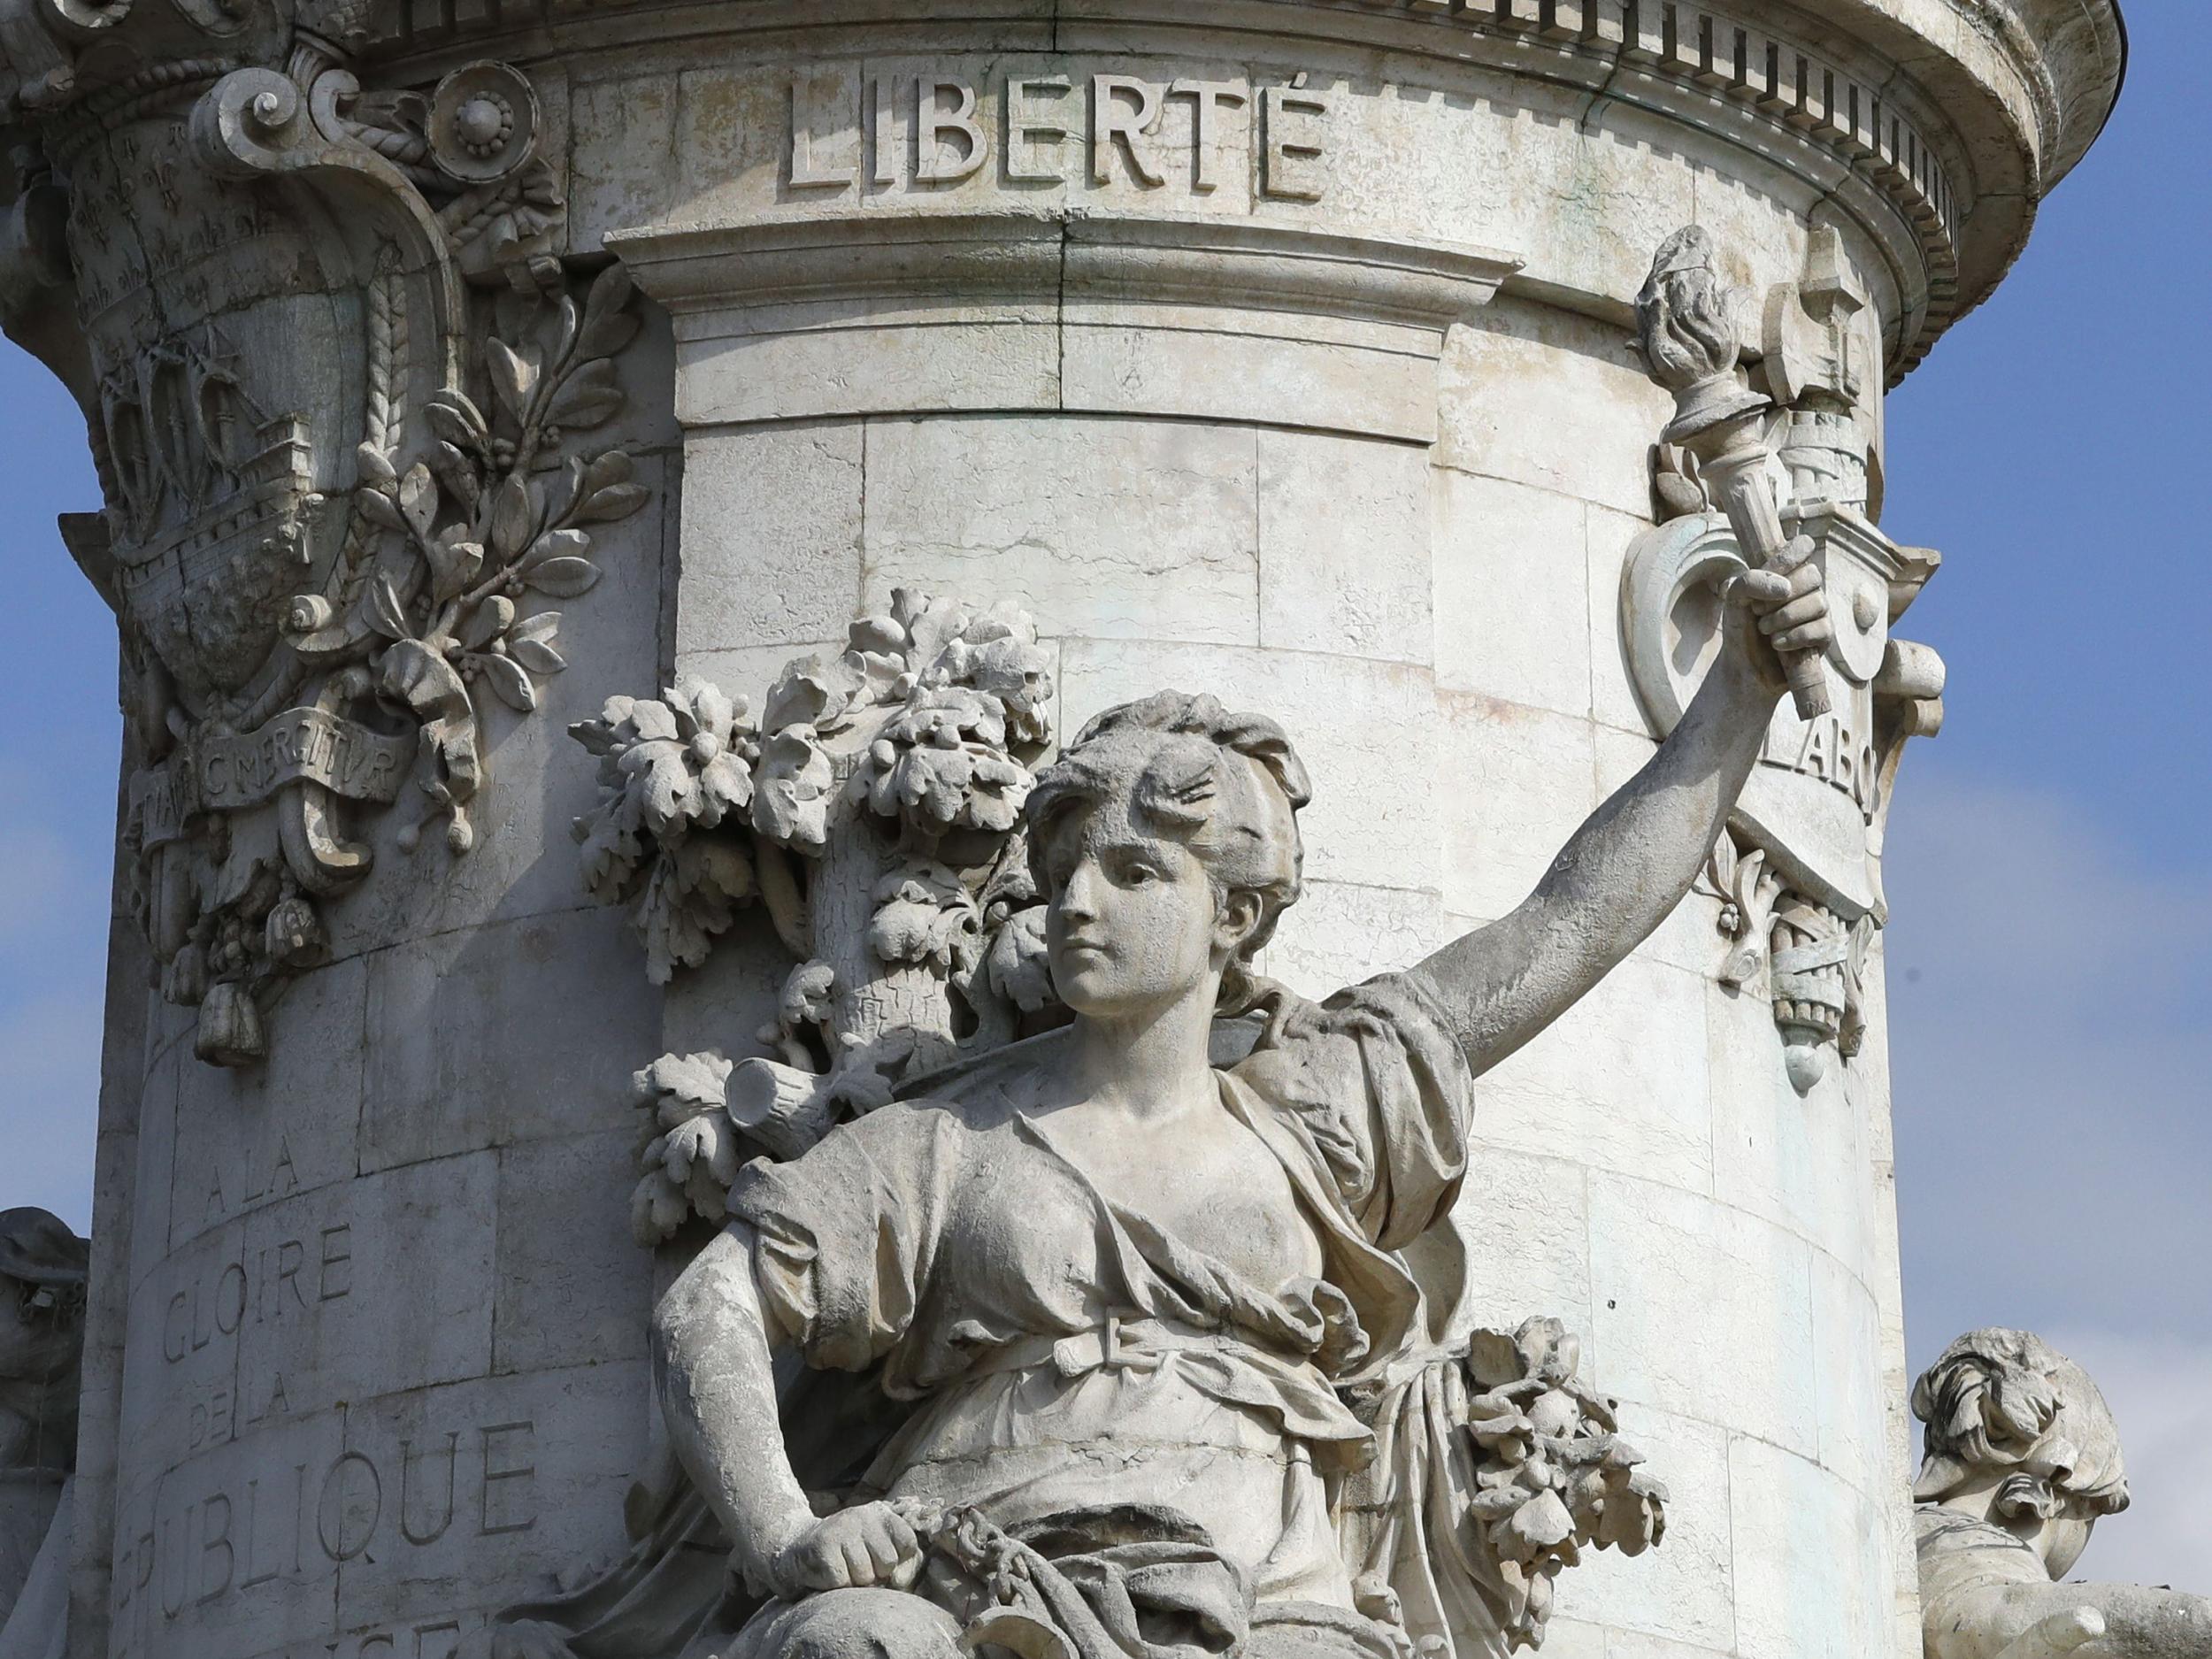 The Marianne monument at Place de la Republique in Paris